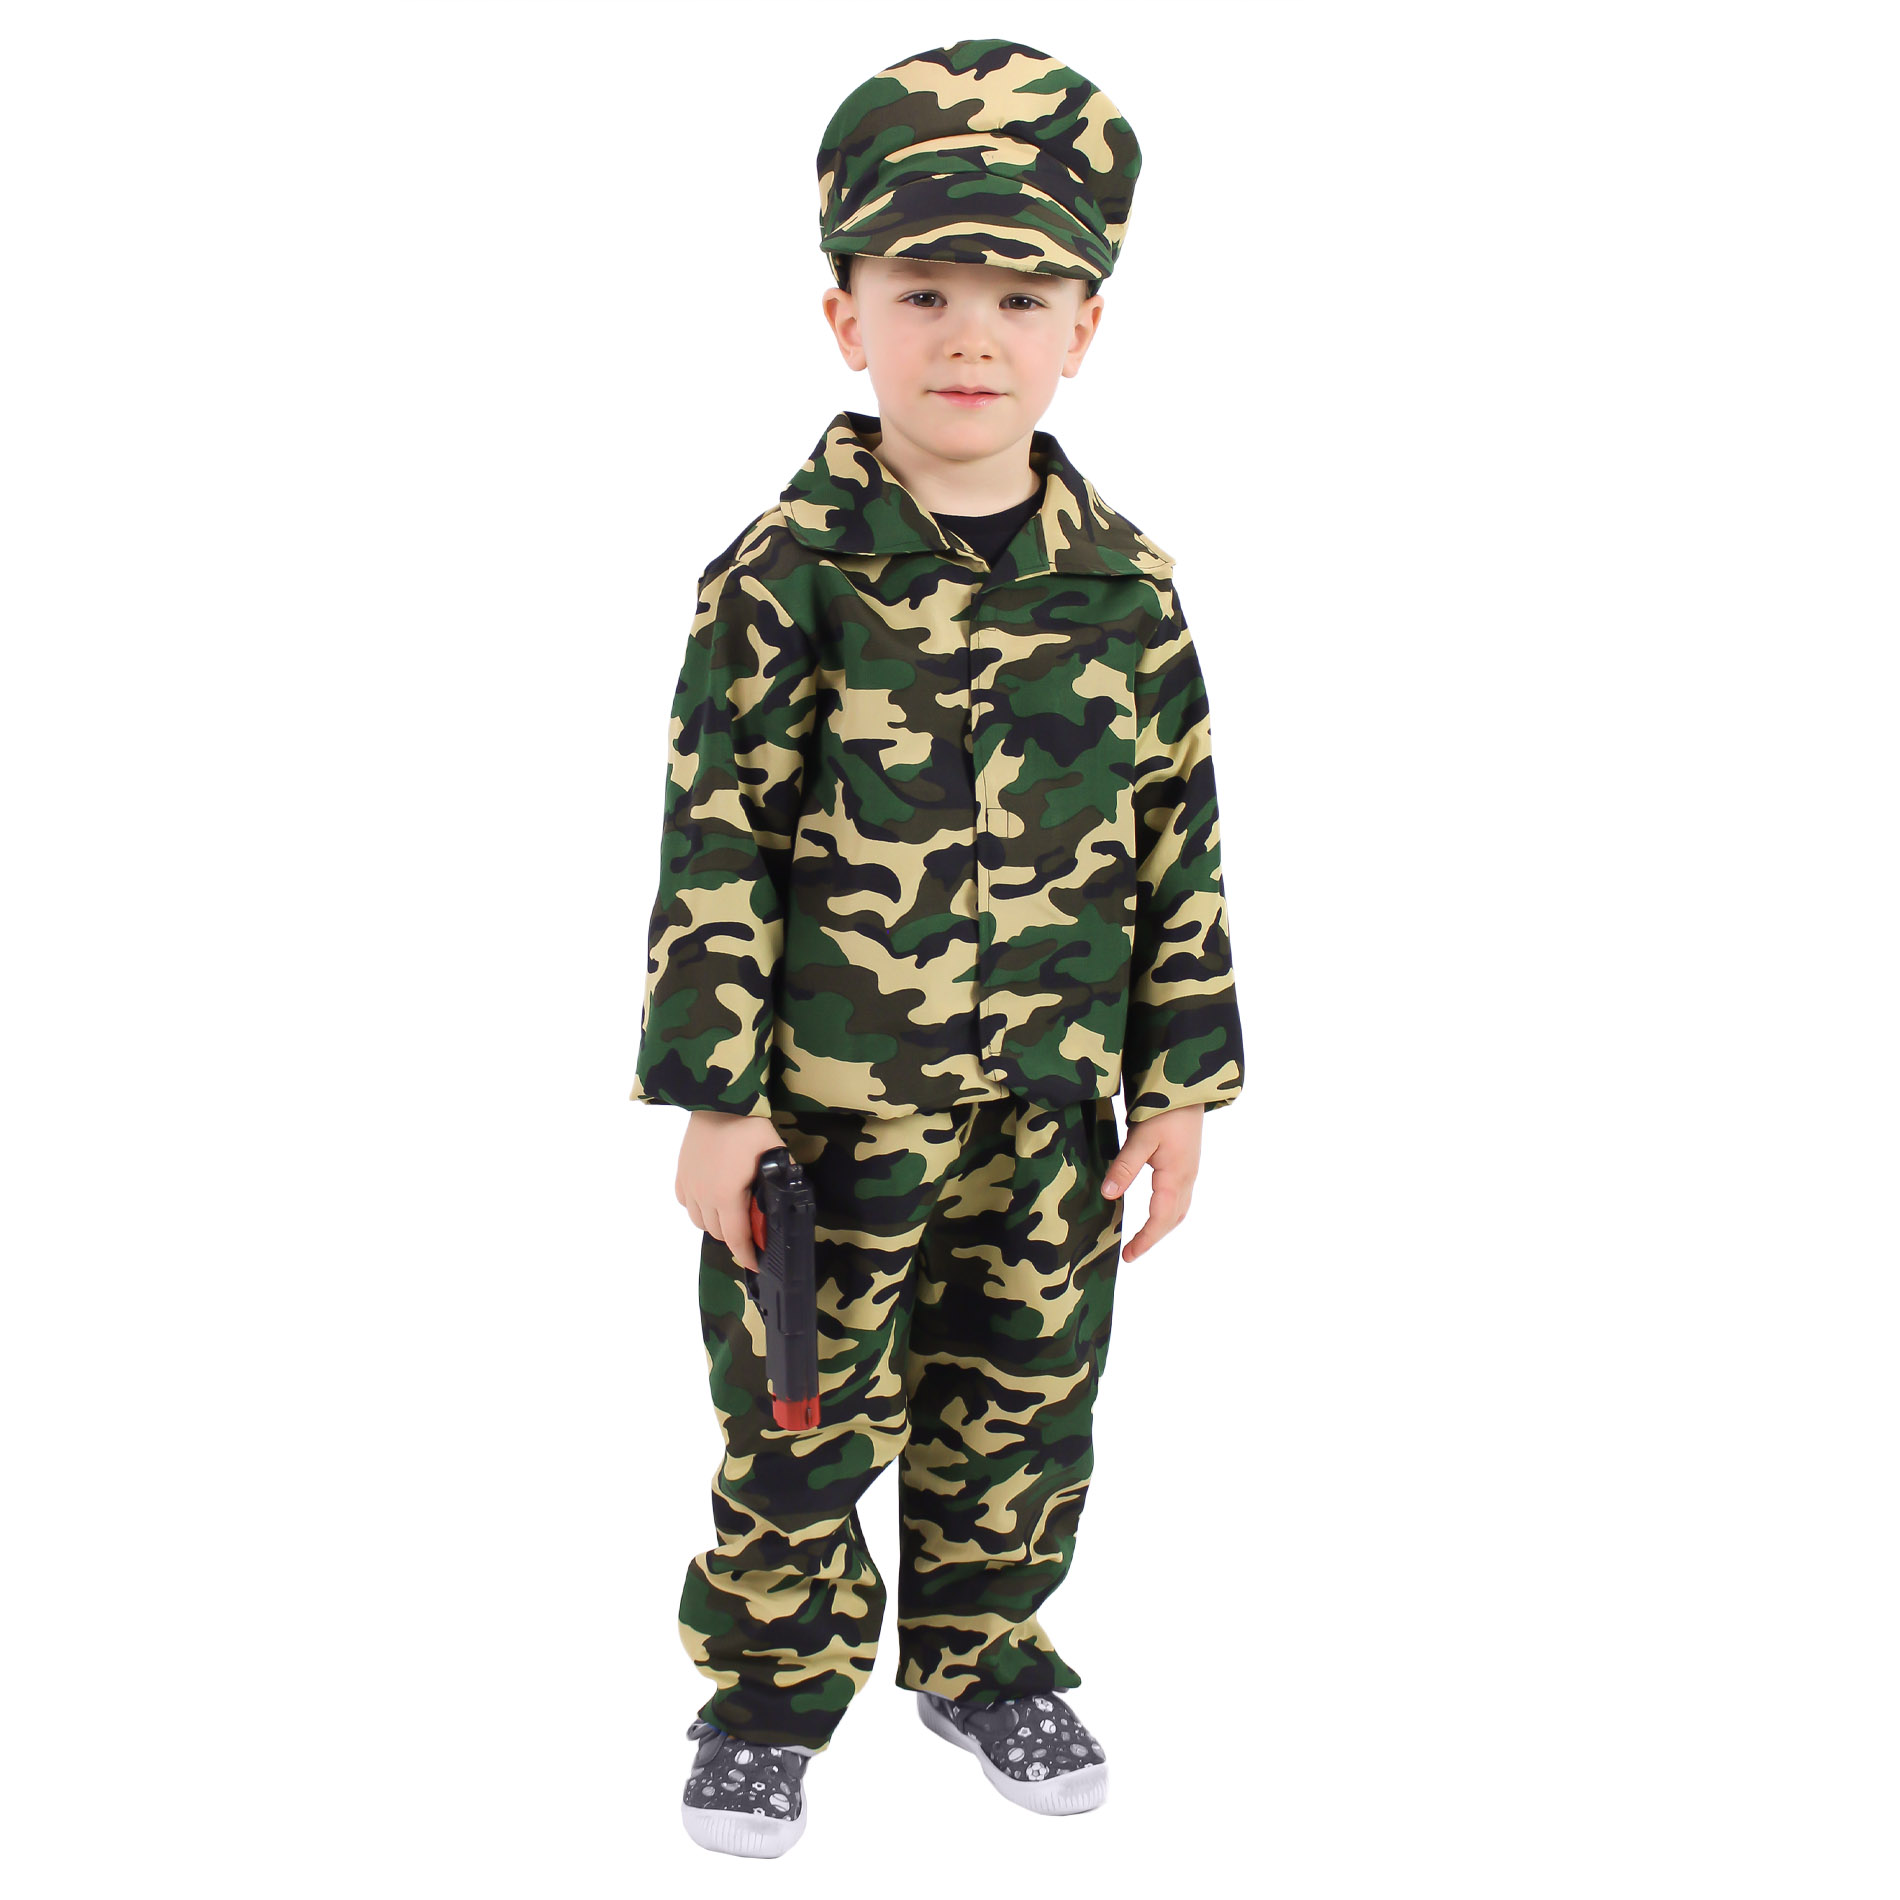 Dětský kostým voják (S)